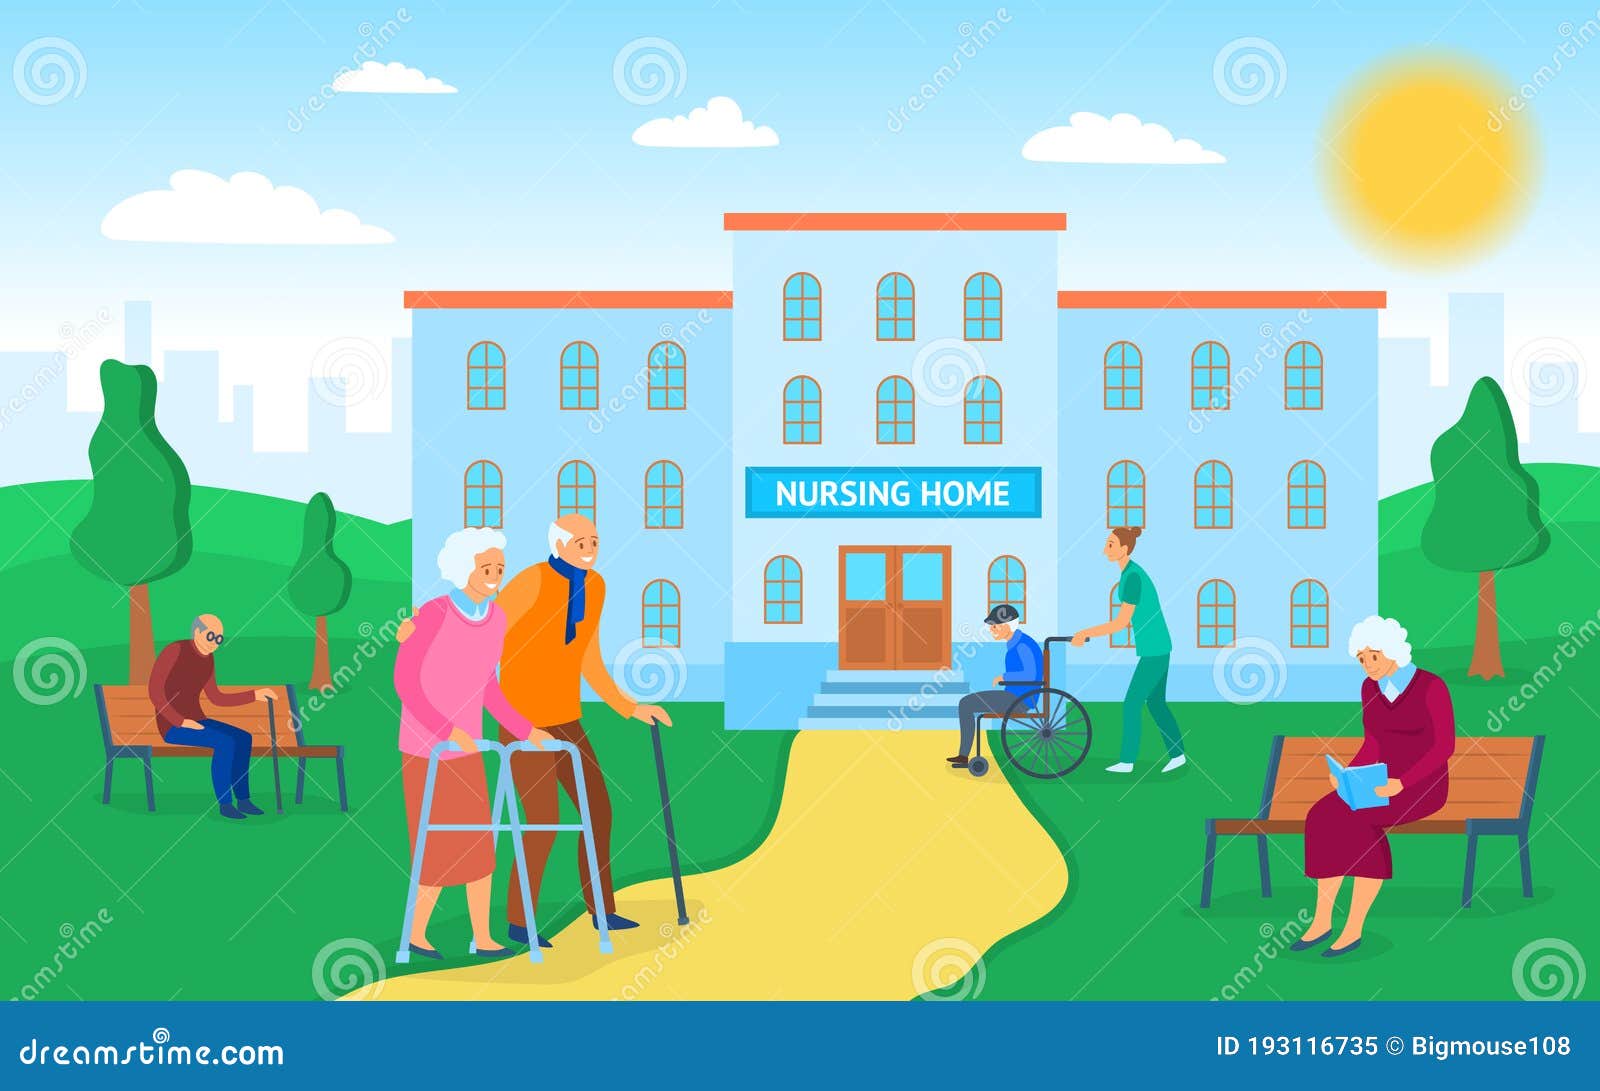 Download Cartoon Color Nursing Home Building Concept. Vector Stock ...